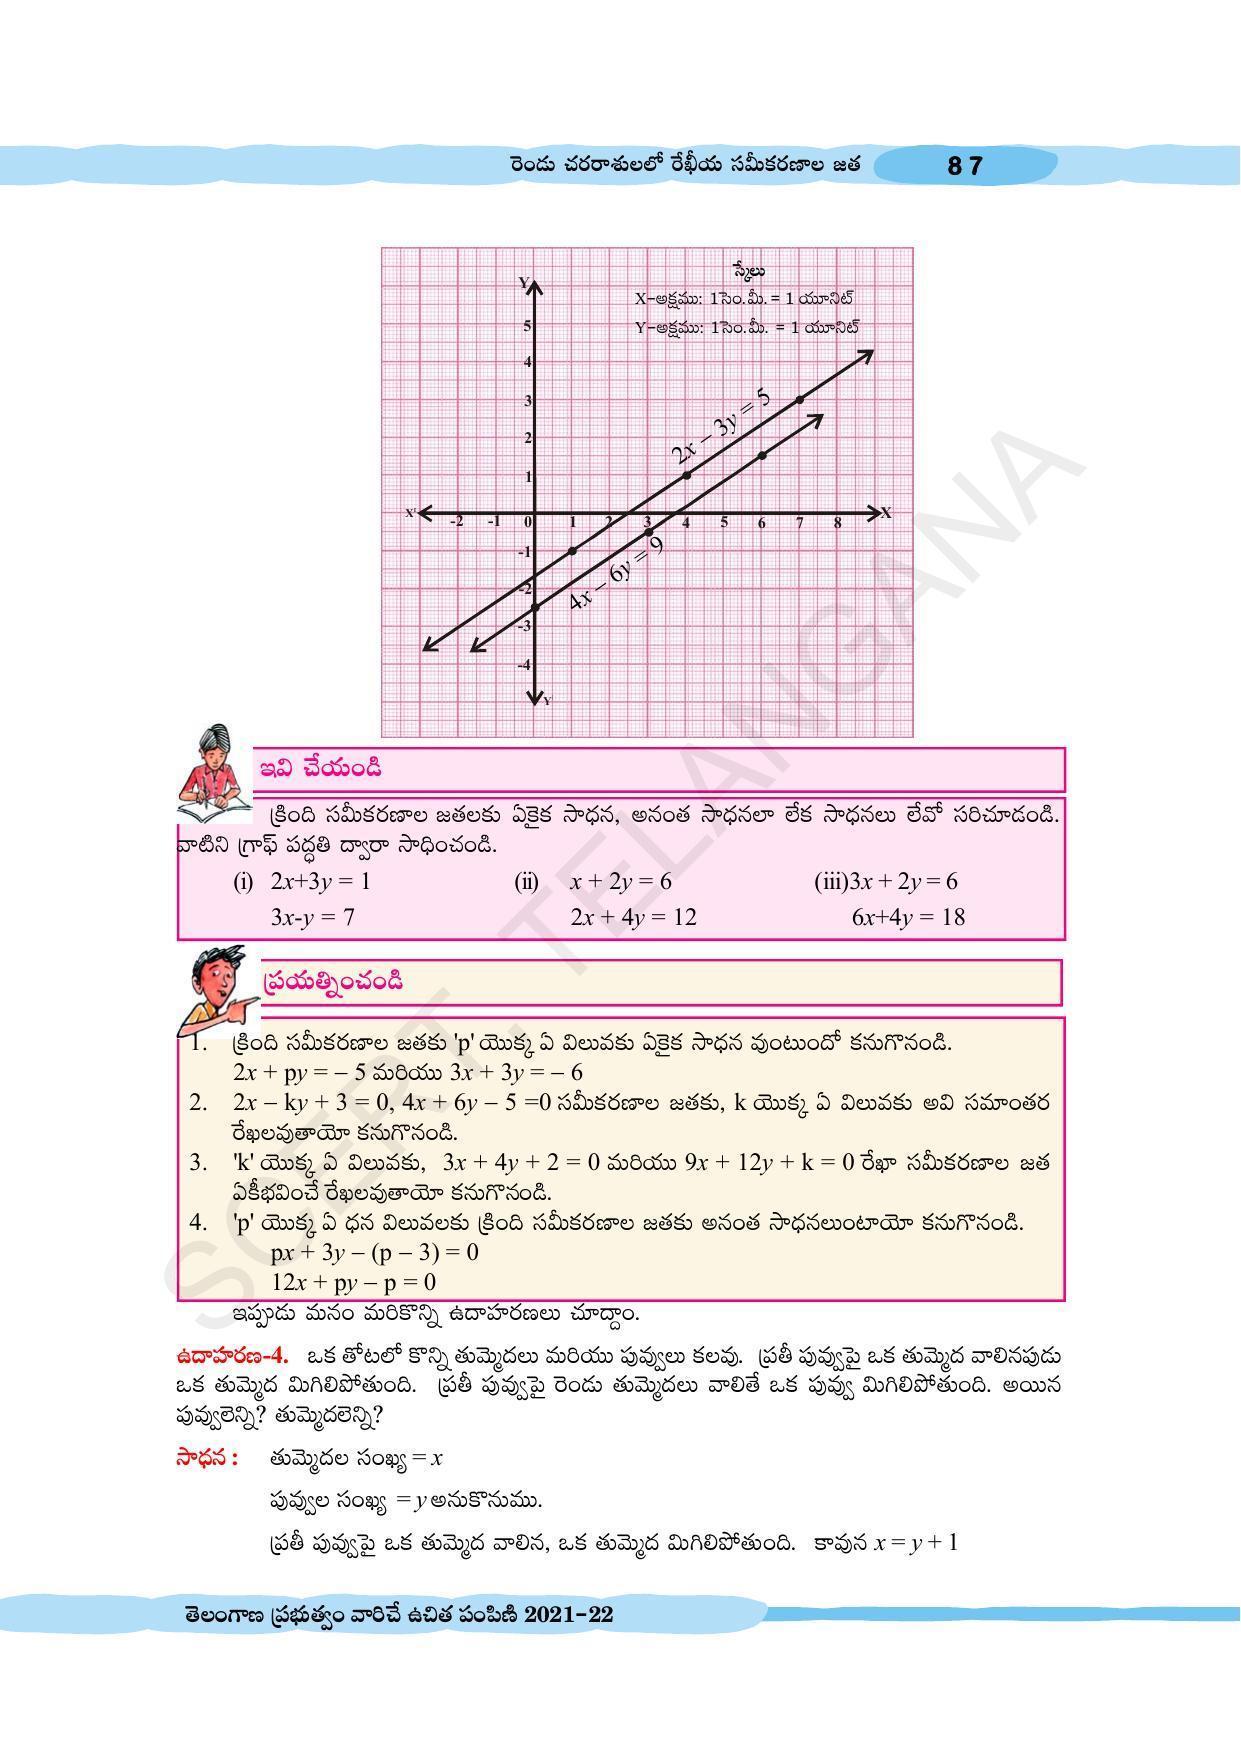 TS SCERT Class 10 Maths (Telugu Medium) Text Book - Page 97